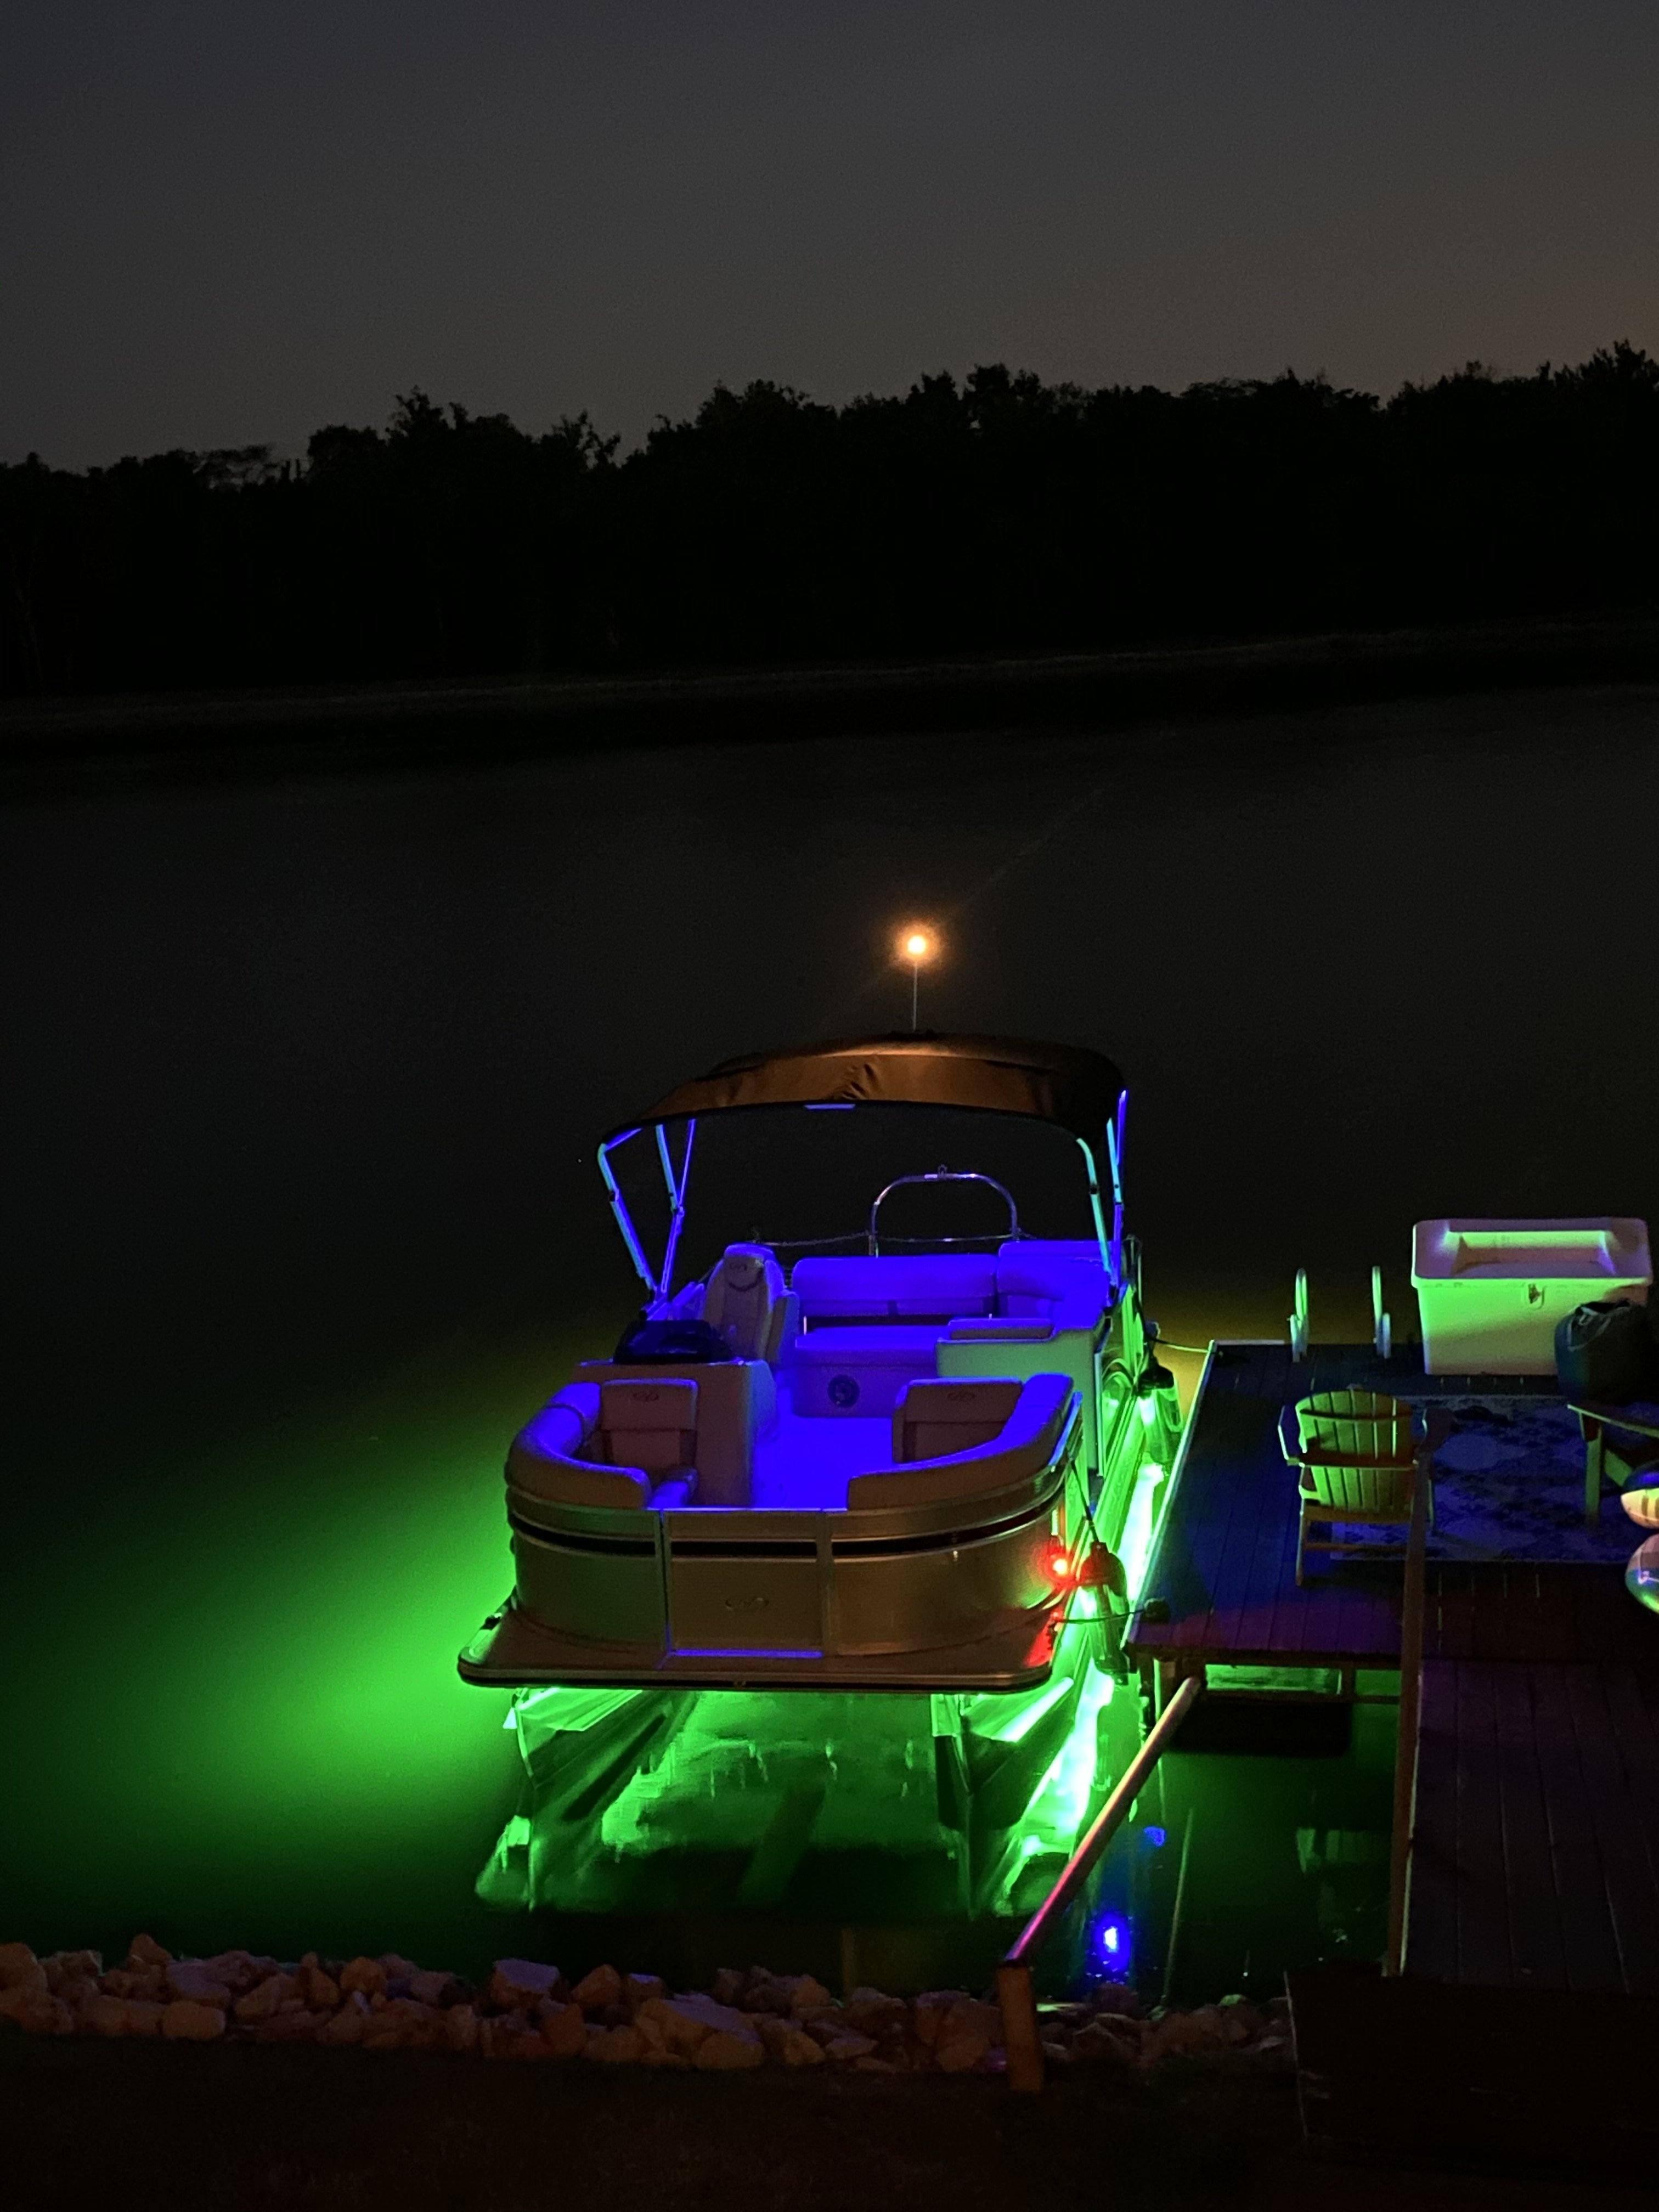 Night Fishing Underwater Fishing Light 15000 LUMEN Green LED Boat Bright  Strip